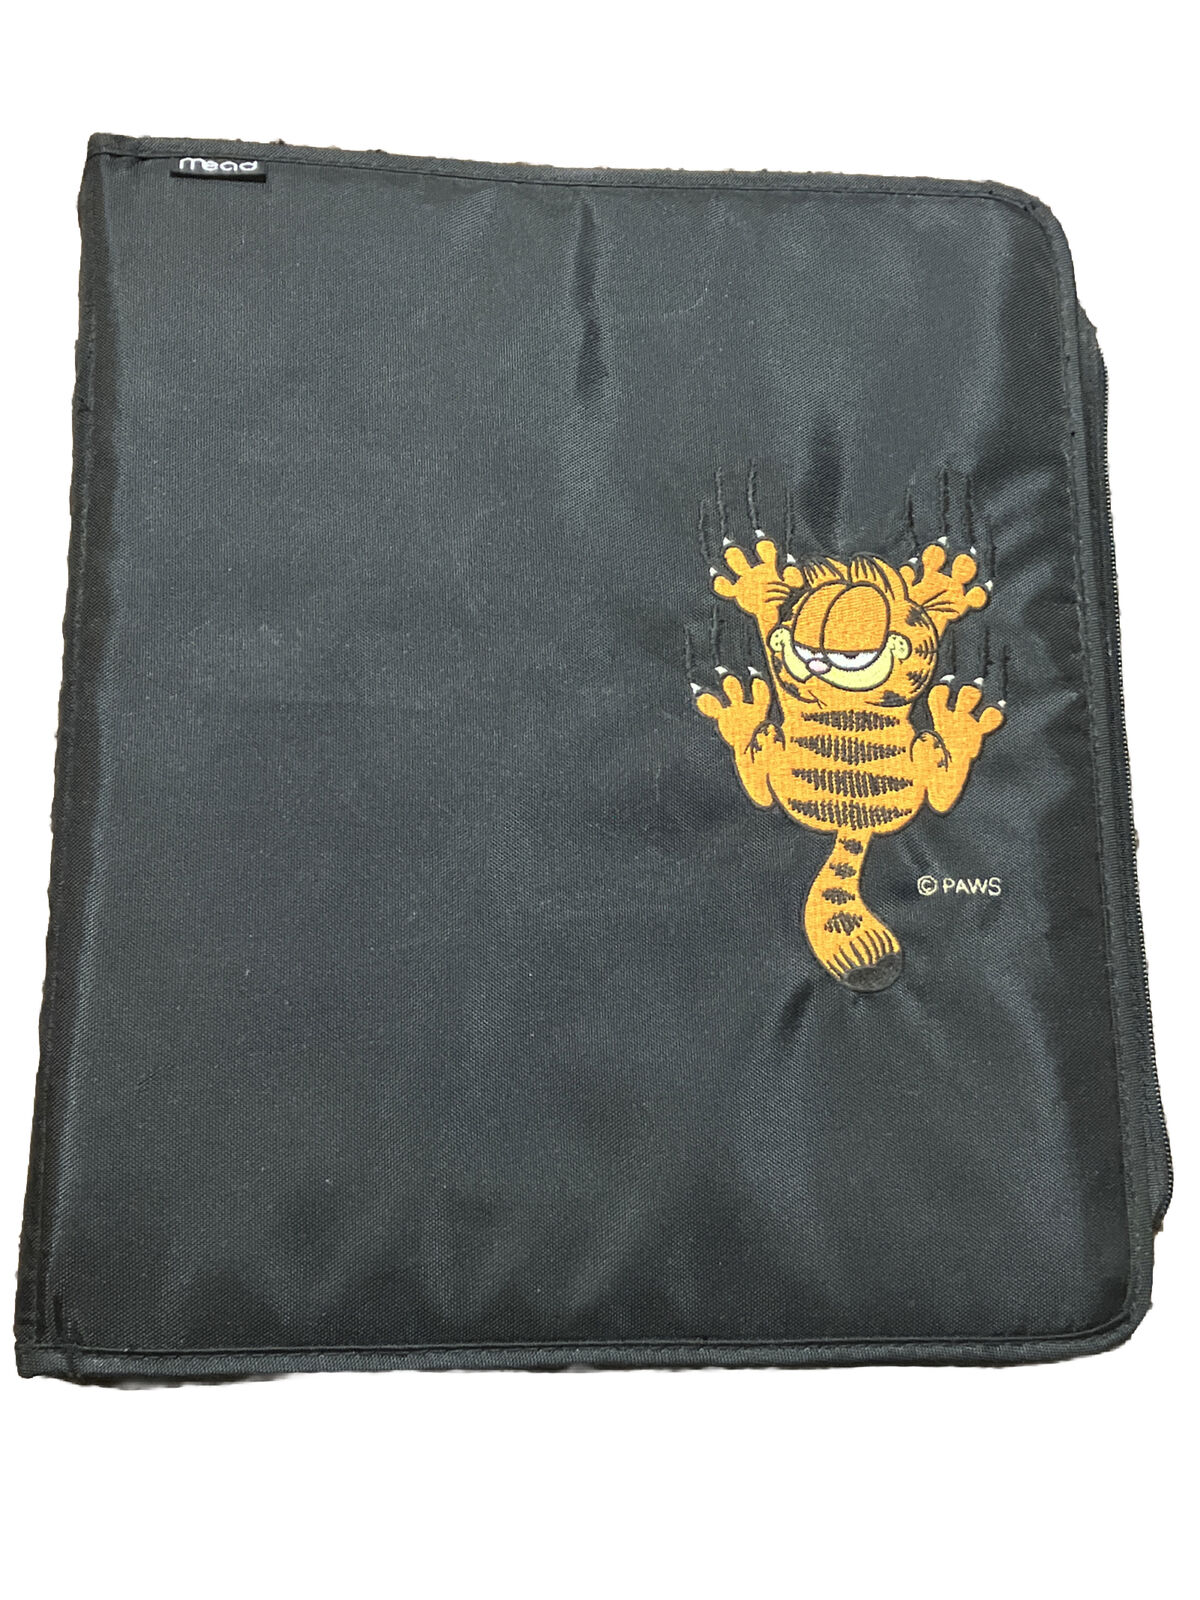 VTG NOSTALGIA Garfield Embroidered Mead 3 Ring Zip Up Binder Organizer 1990\'s